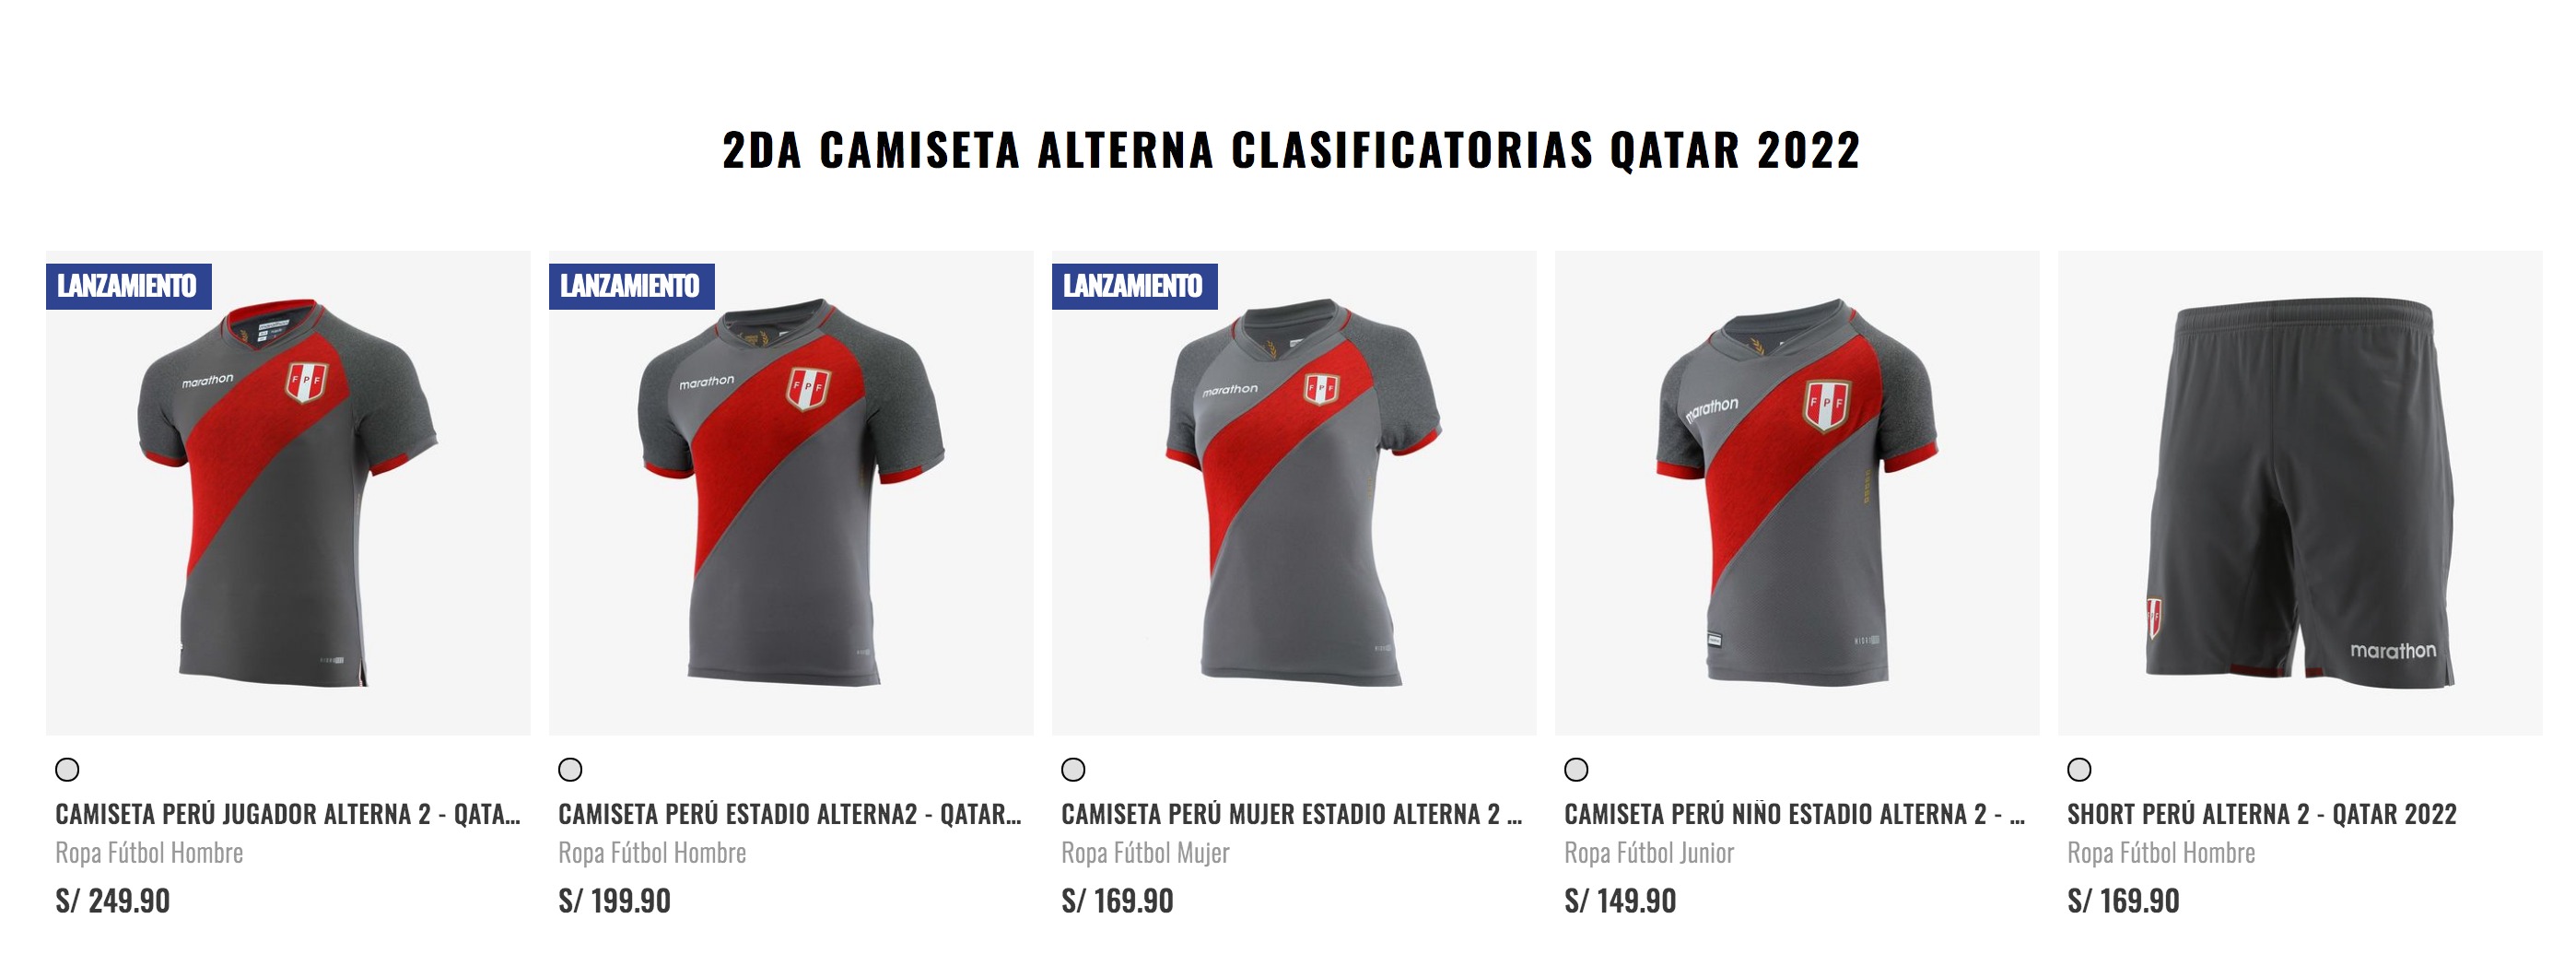 Precios de la segunda camiseta altera de la selección peruana.